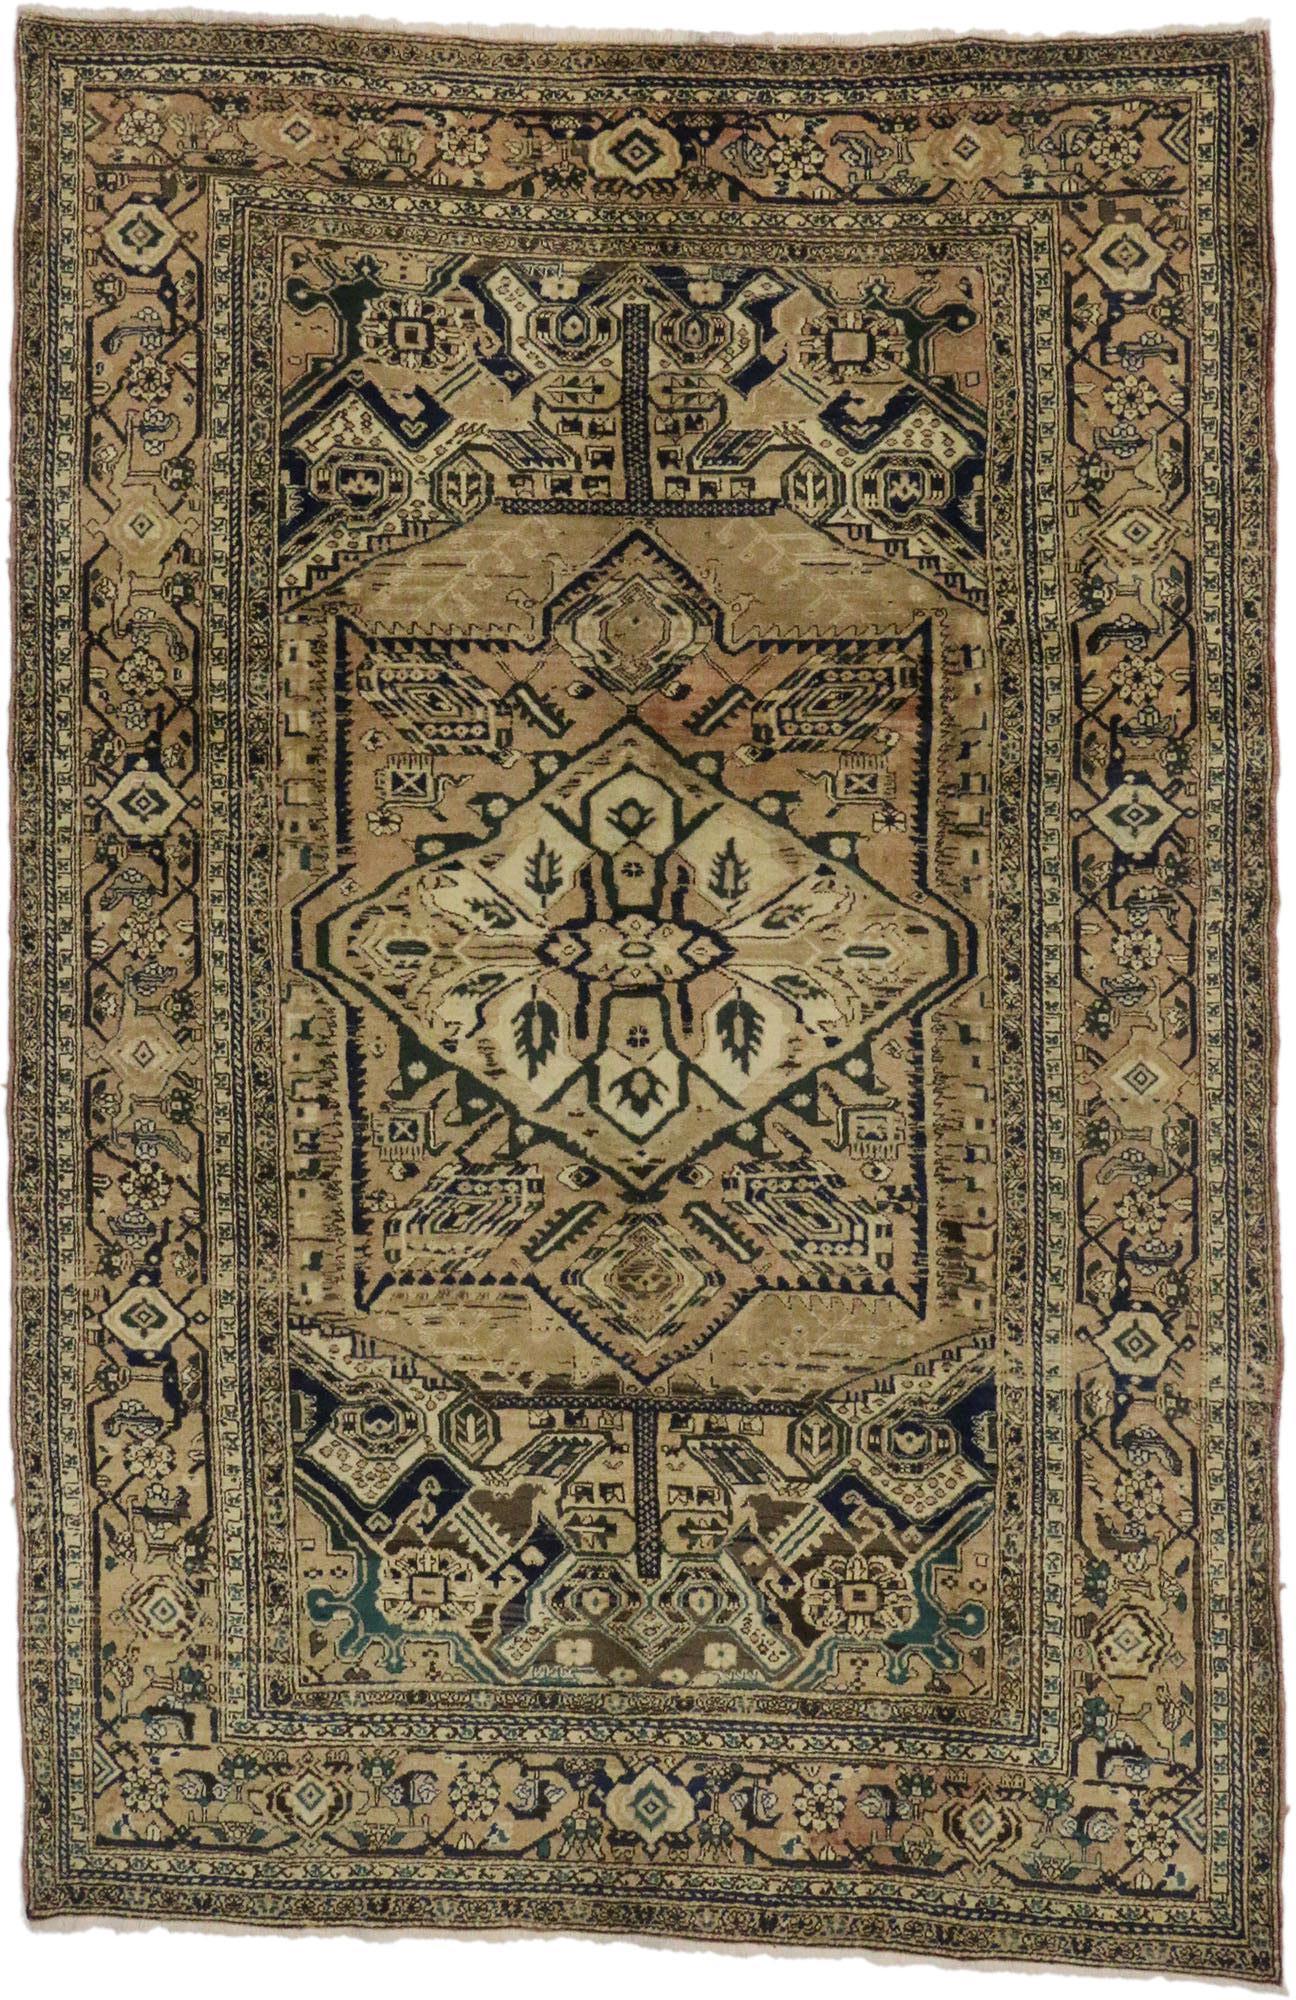 76591 Vintage Persian Heriz Teppich mit modernem Stil 07'05 X 11'00. Mit seiner ansprechenden Designästhetik und der seltenen Farbpalette nach der antiken Wäsche wird dieser handgeknüpfte alte persische Heriz-Teppich aus Wolle beeindrucken. Das